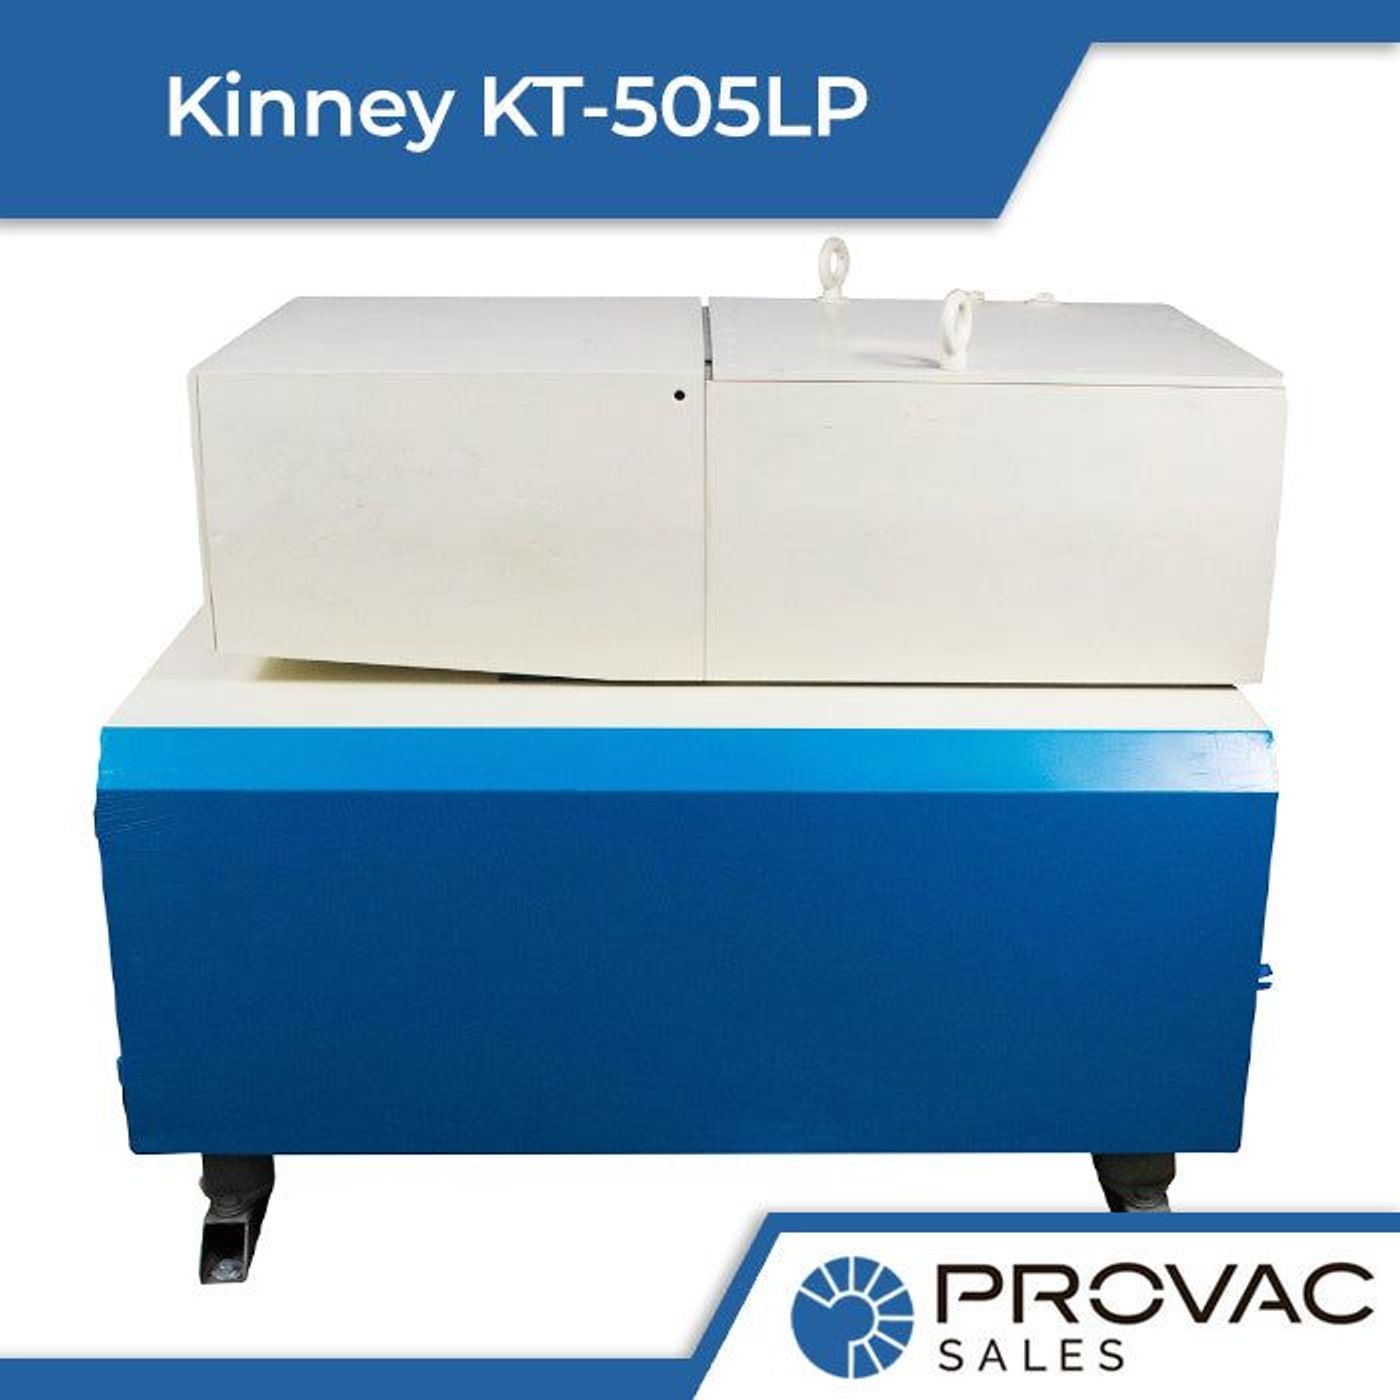 Kinney KT-505LP Low Profile Piston Pump, In Stock